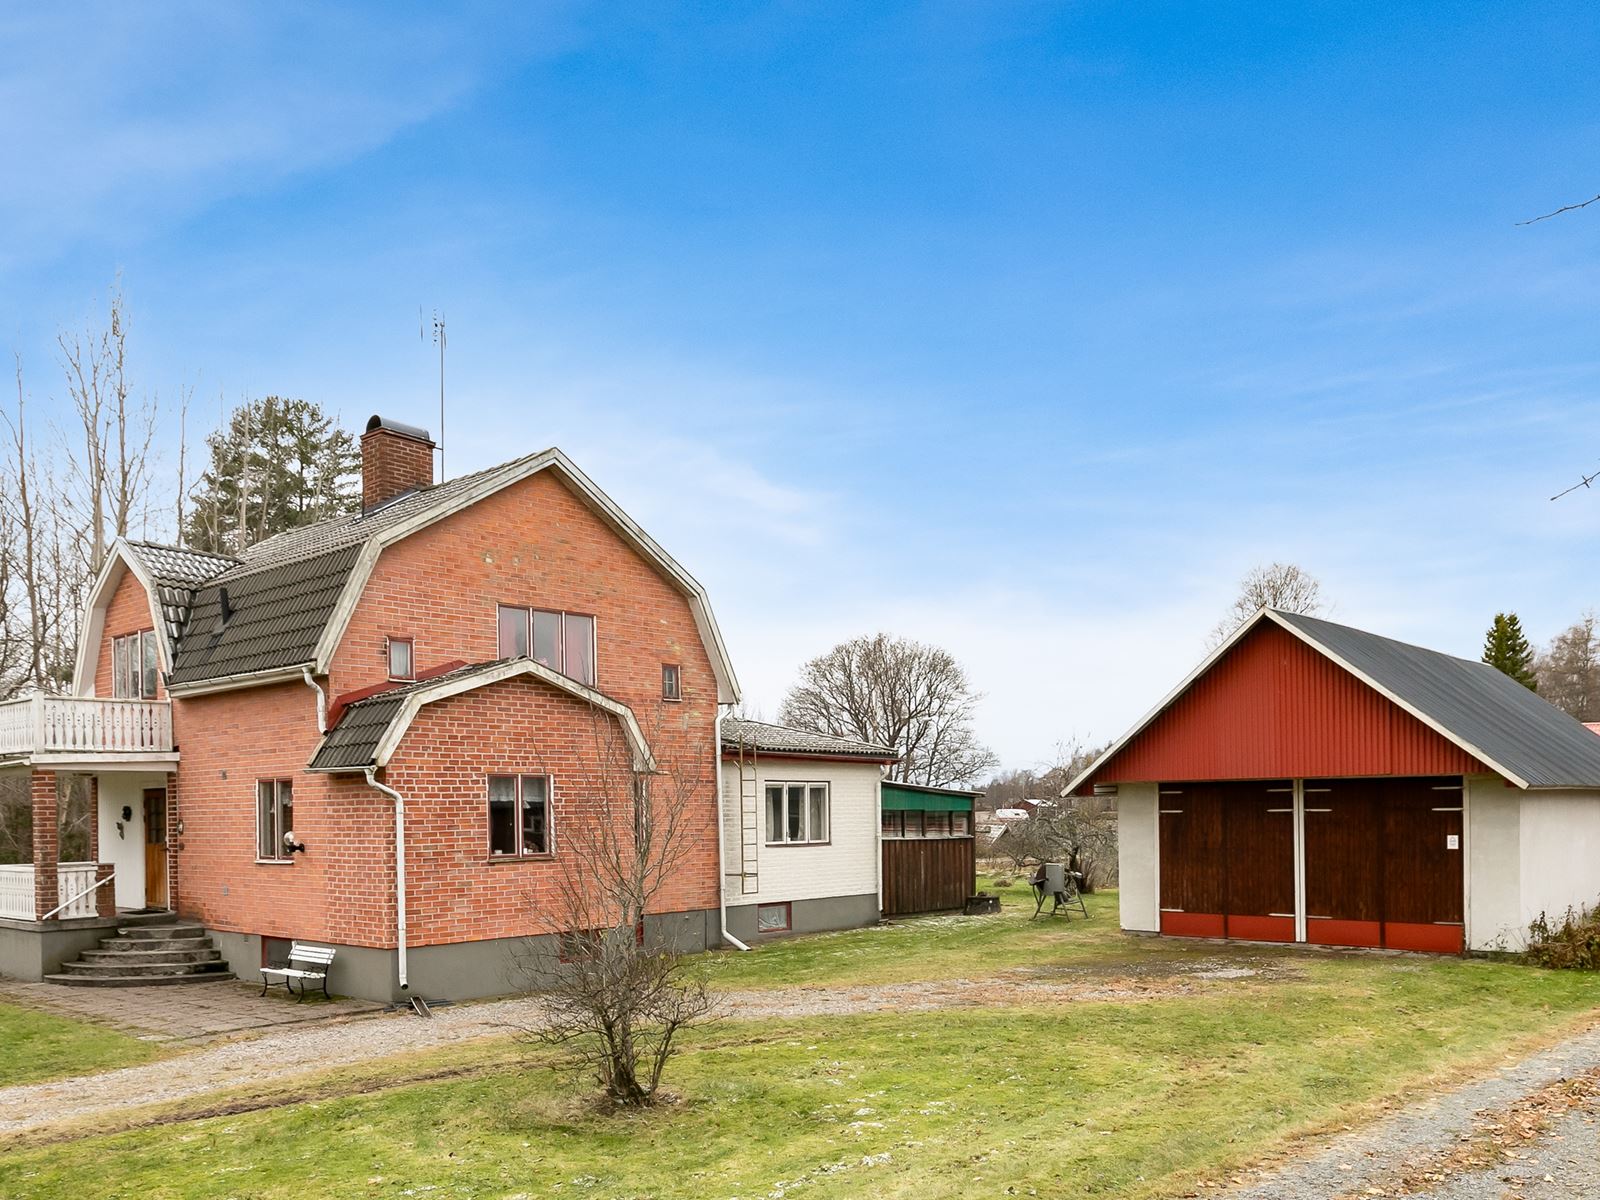 Hus, Garage/verkstad. Kvistbro Björkhem - Bjurfors